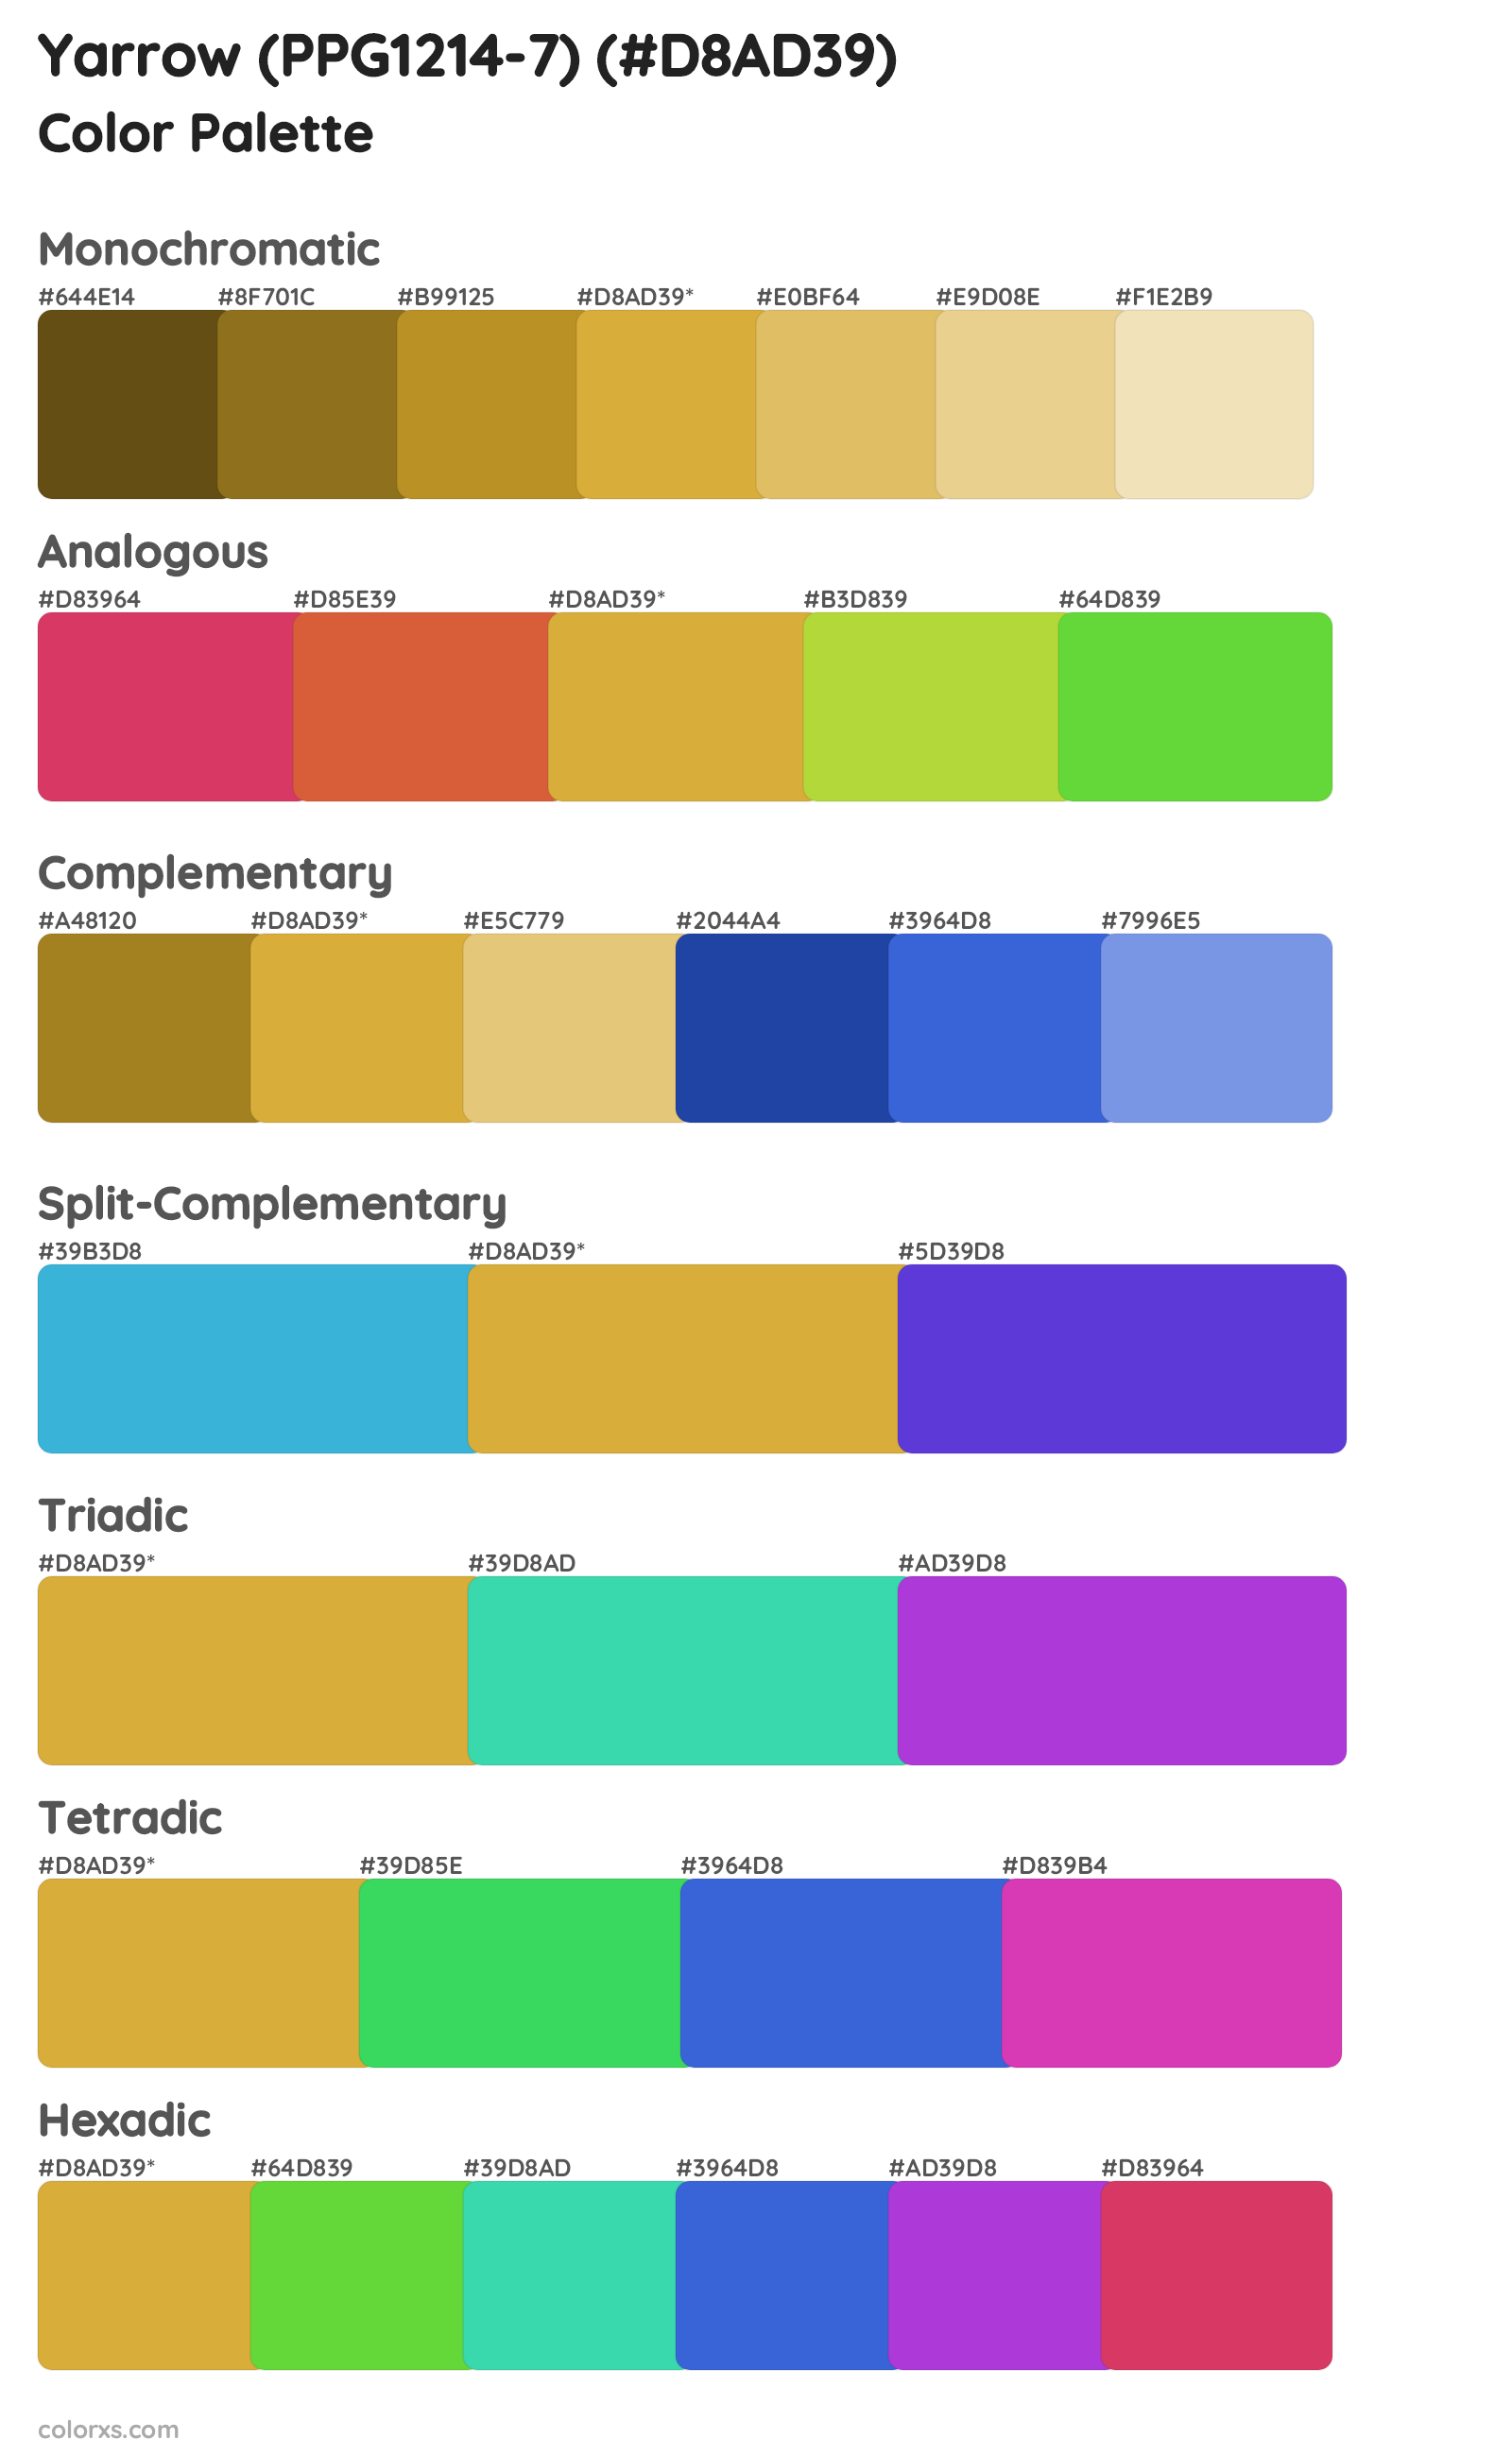 Yarrow (PPG1214-7) Color Scheme Palettes